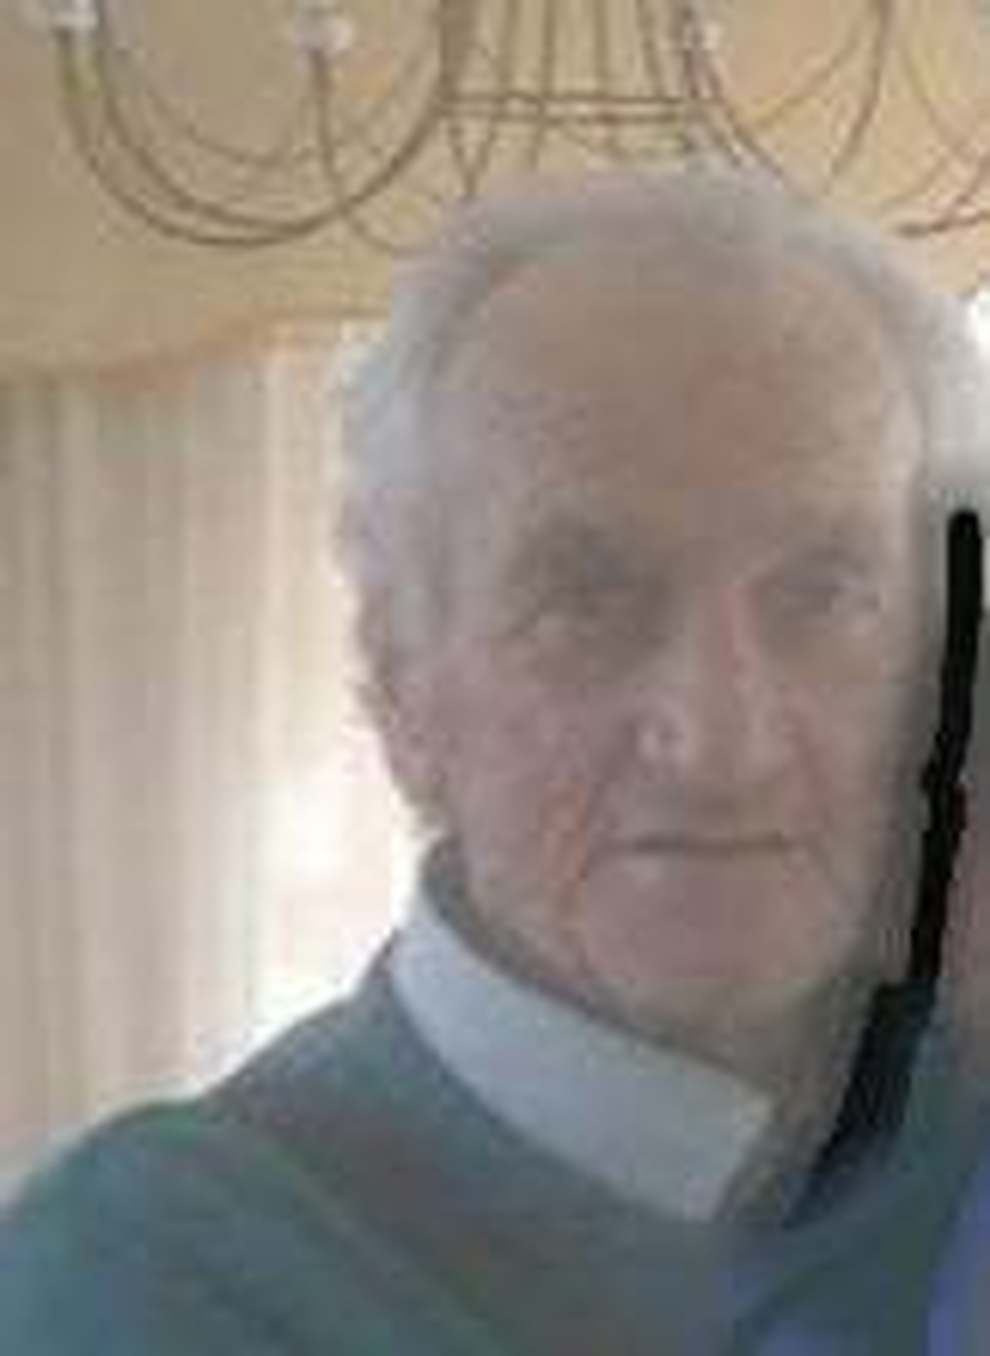 Grumo Nevano, anziano con disturbi di orientamento scomparso da ieri pomeriggio